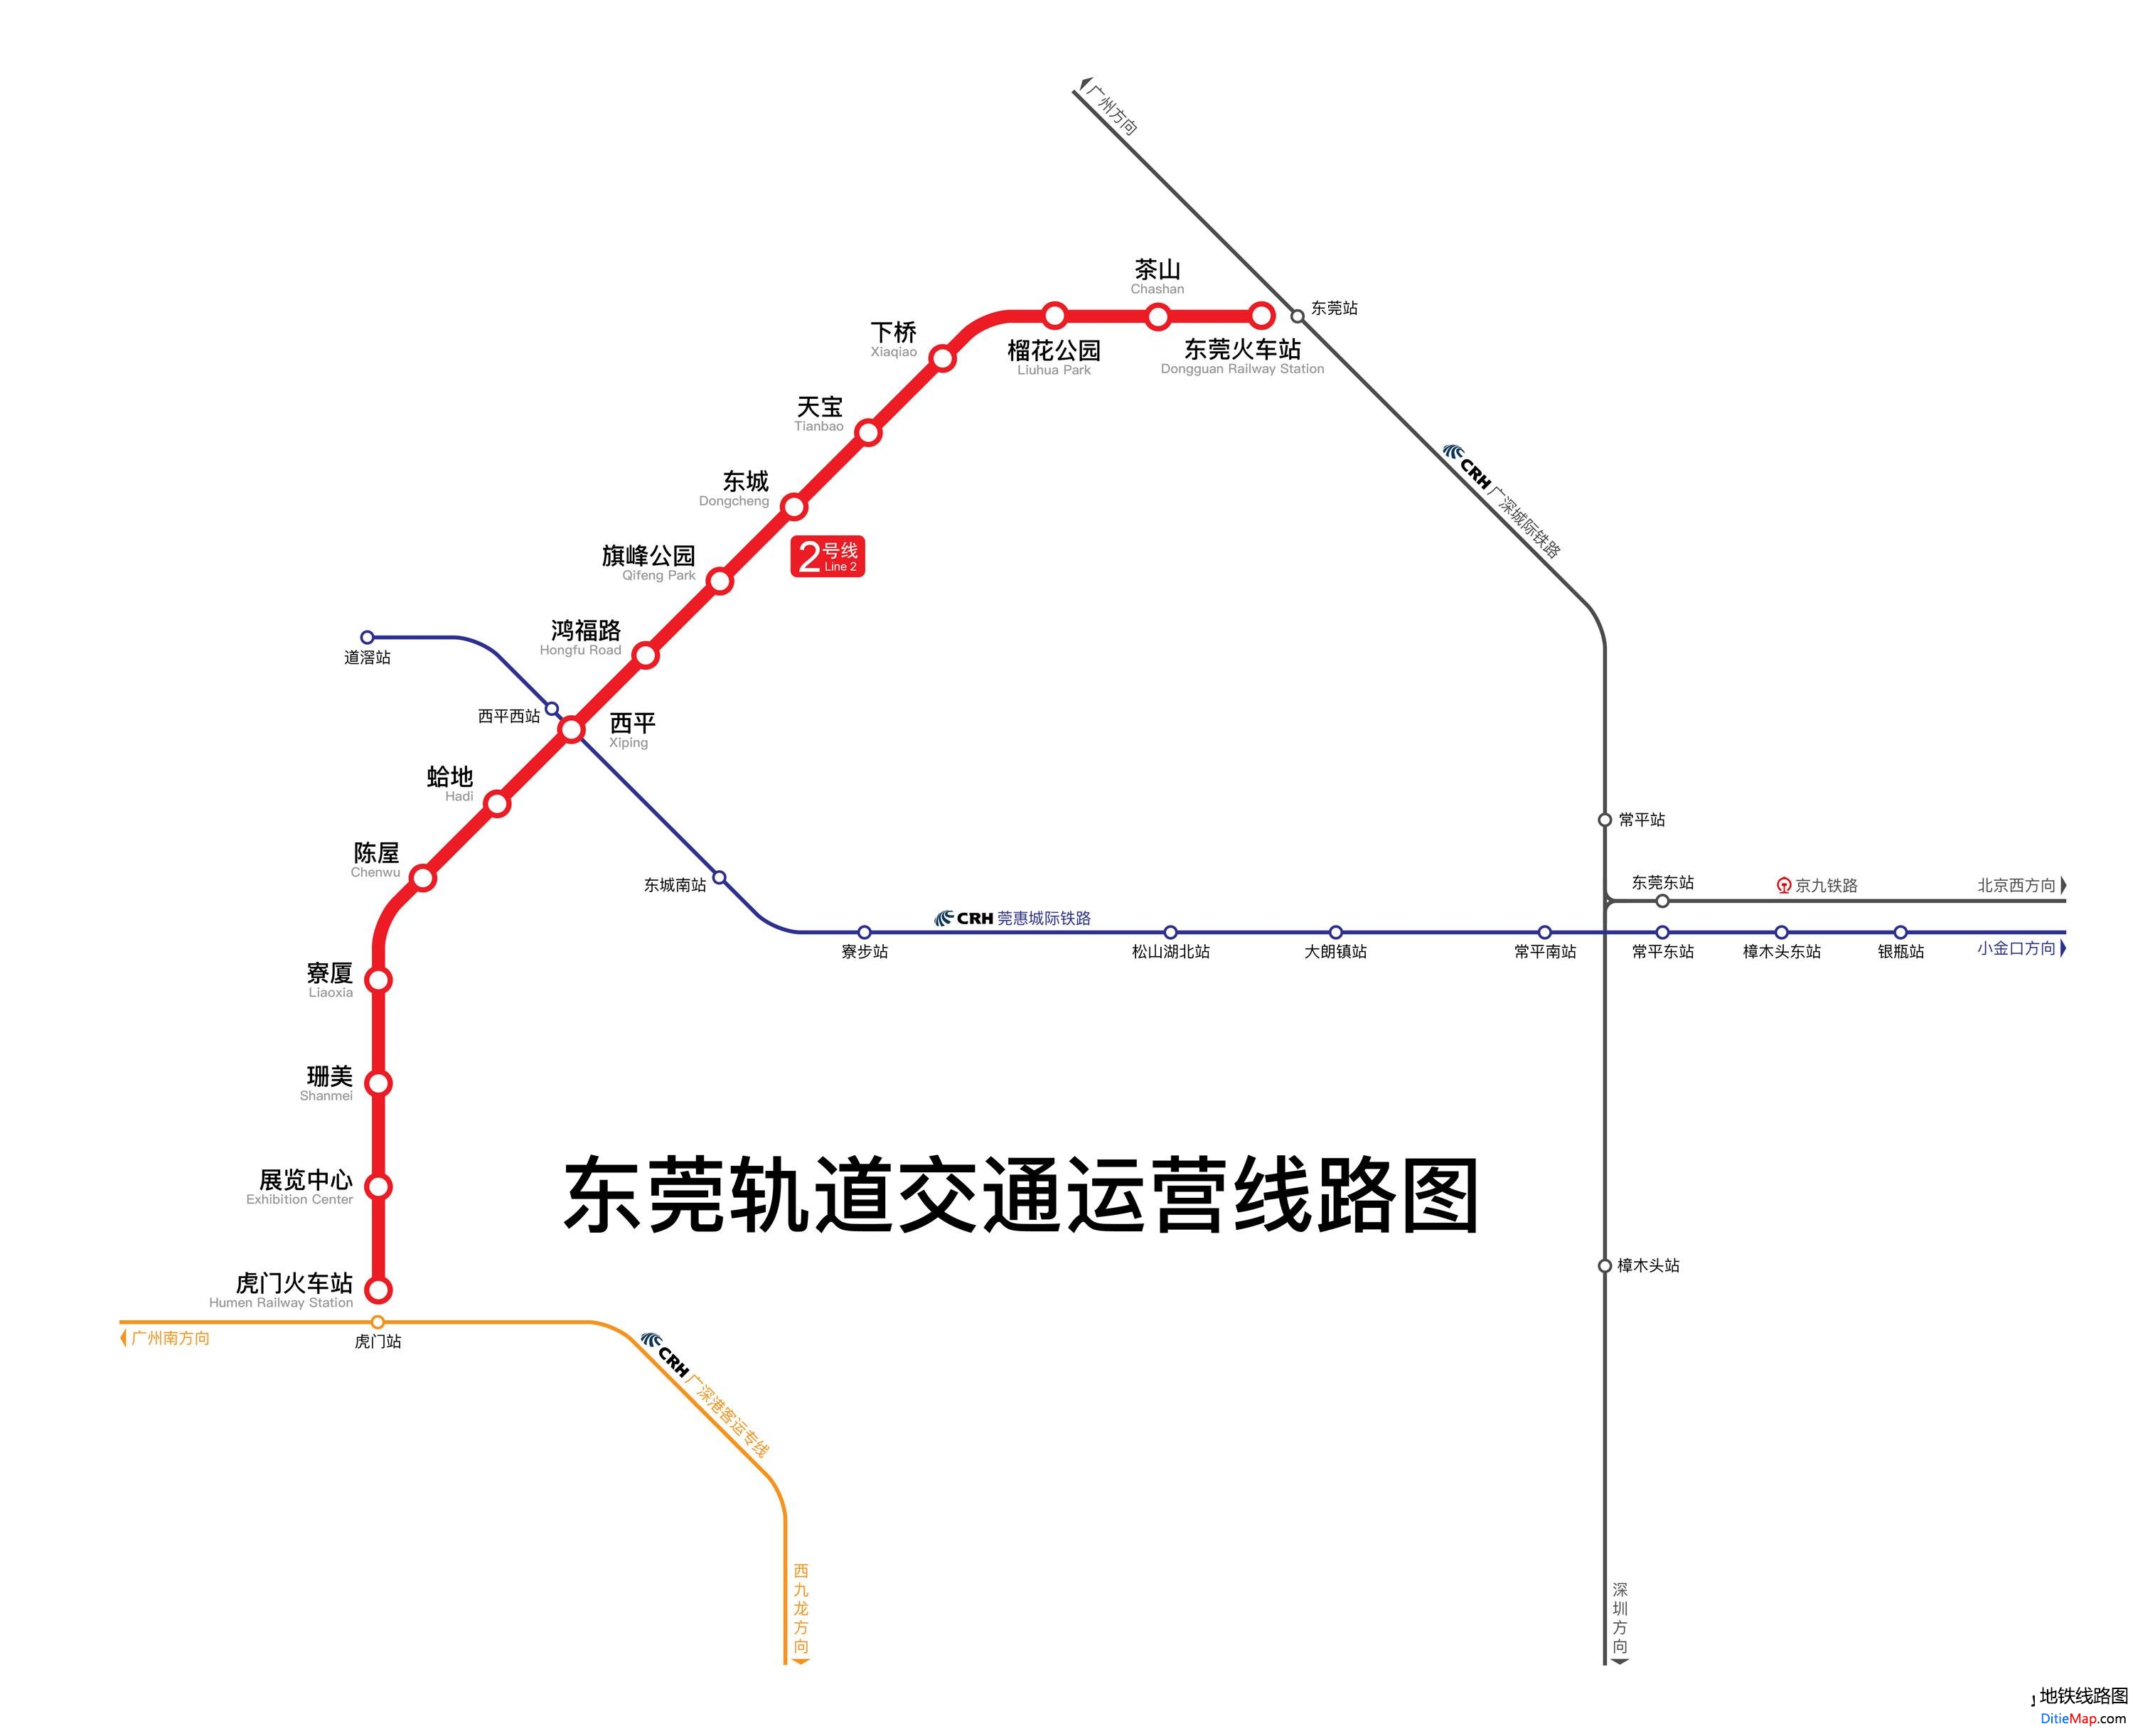 广州和东莞实现轨道ob欧宝官网联网无缝对接东莞R1线：预计2019年通车